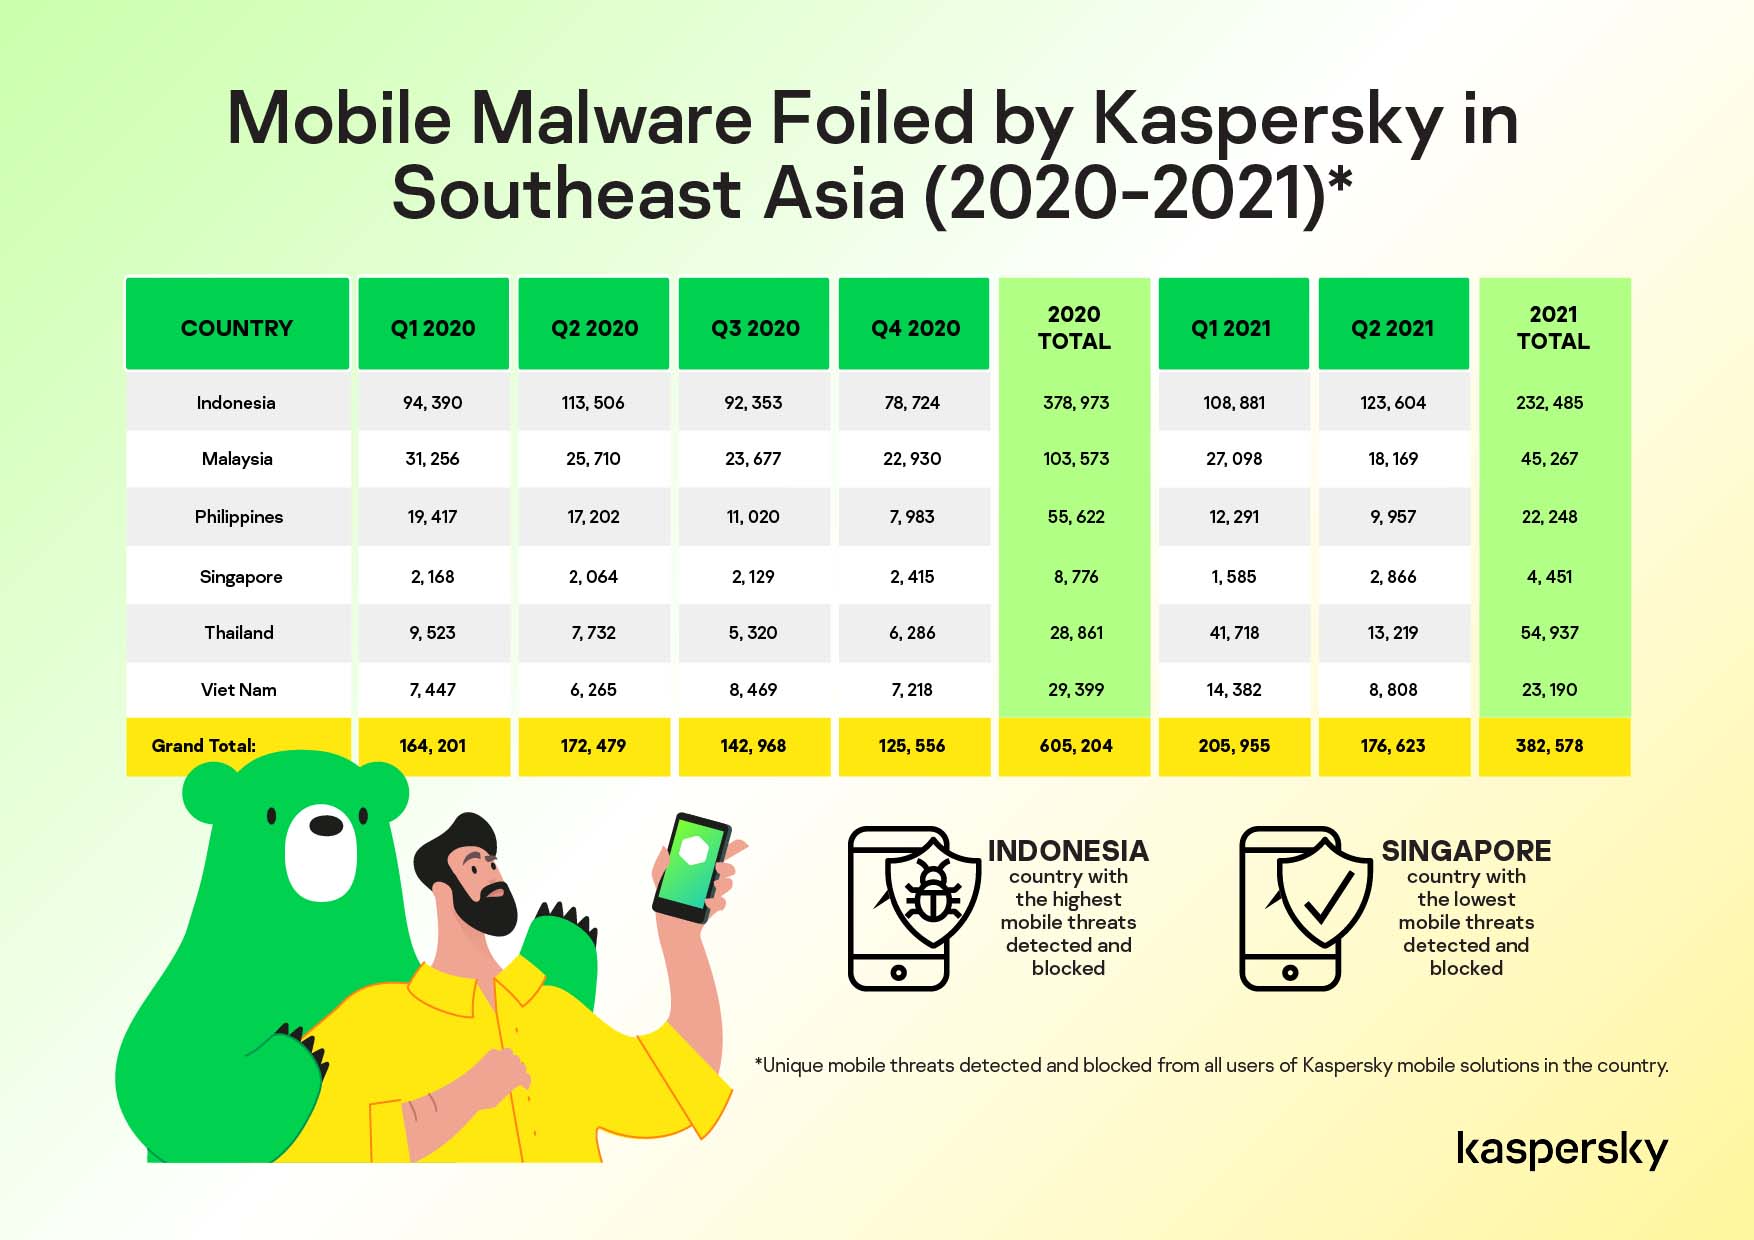 Kaspersky ngăn chặn hơn 2,000 mã độc di động mỗi ngày trong khu vực Đông Nam Á